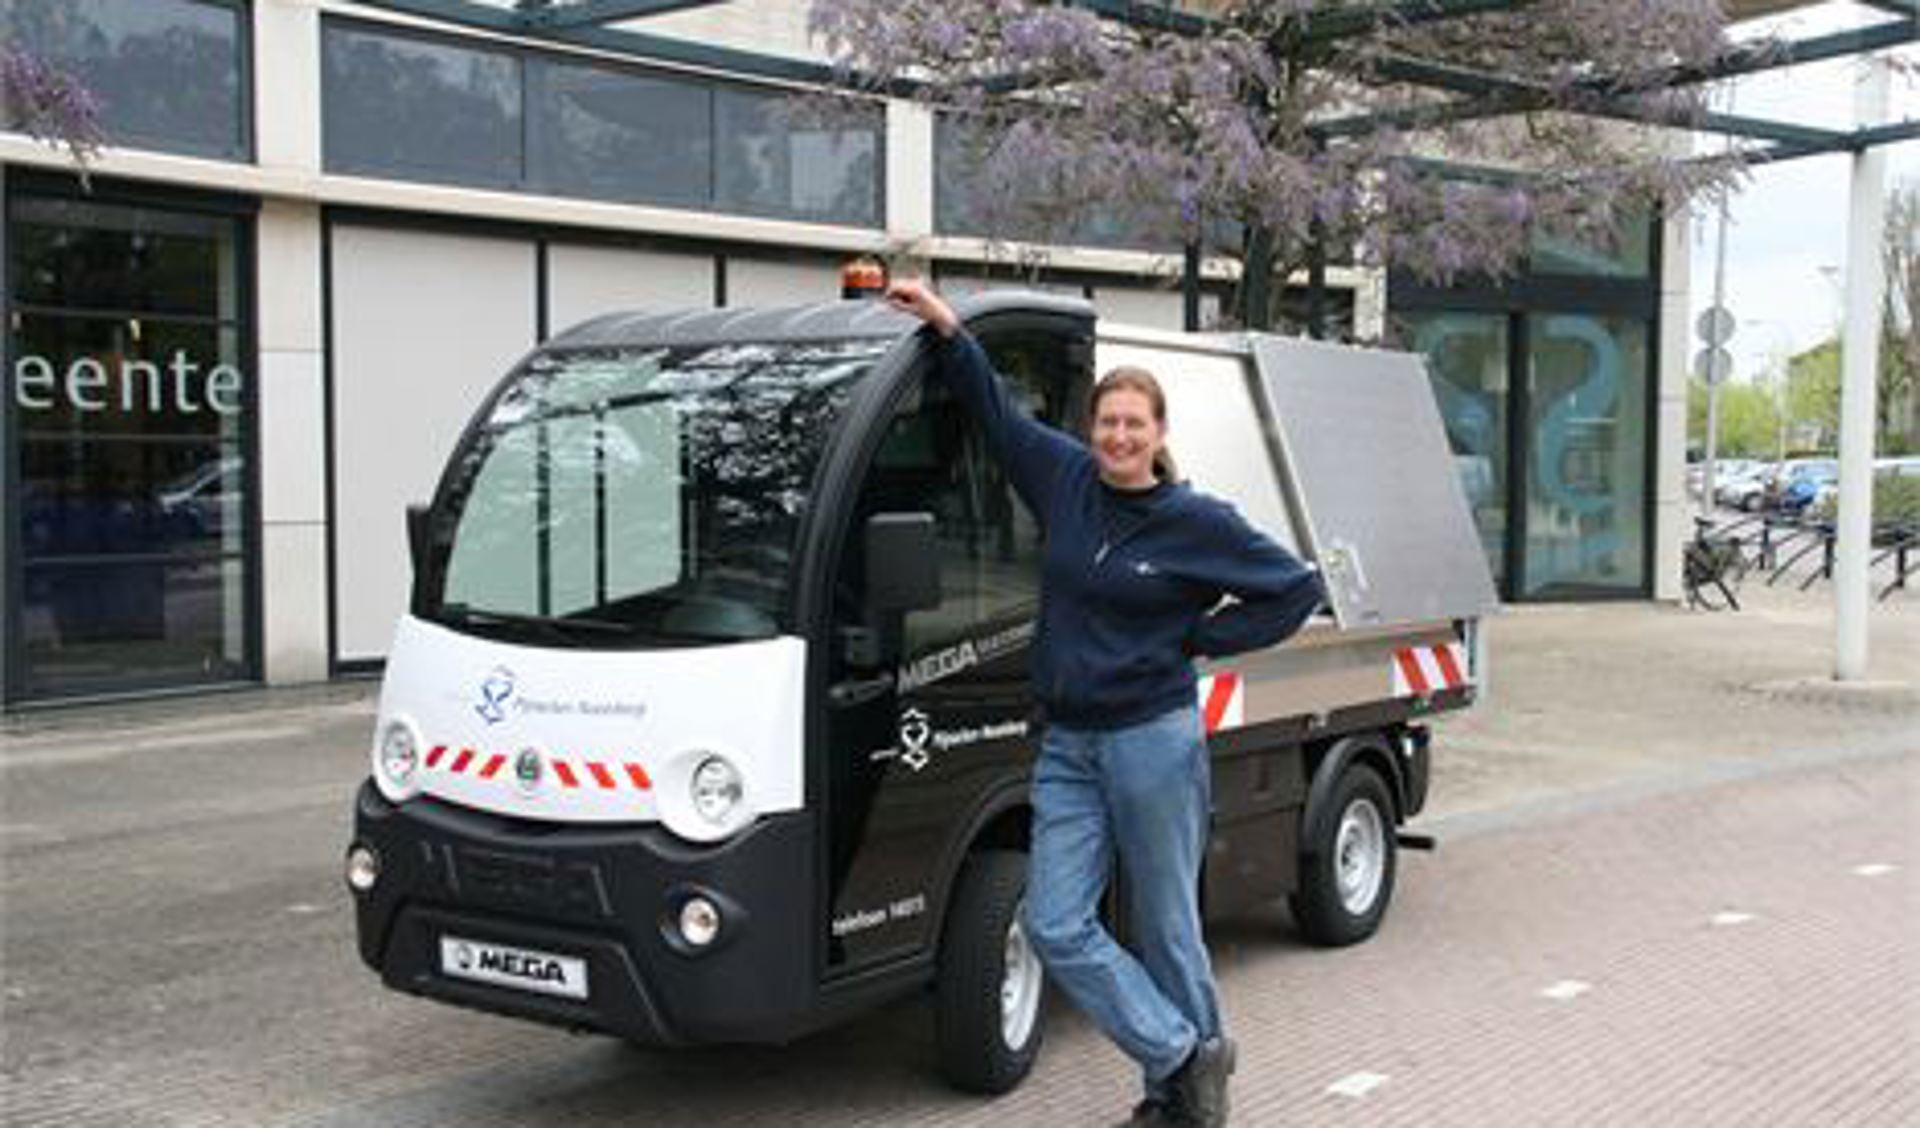 Medewerker Iris Magendans gaat aan de slag met de nieuwe elektro-wagen. Inwoners zullen haar met haar nieuwe wagen vaak door Pijnacker zien rijden.